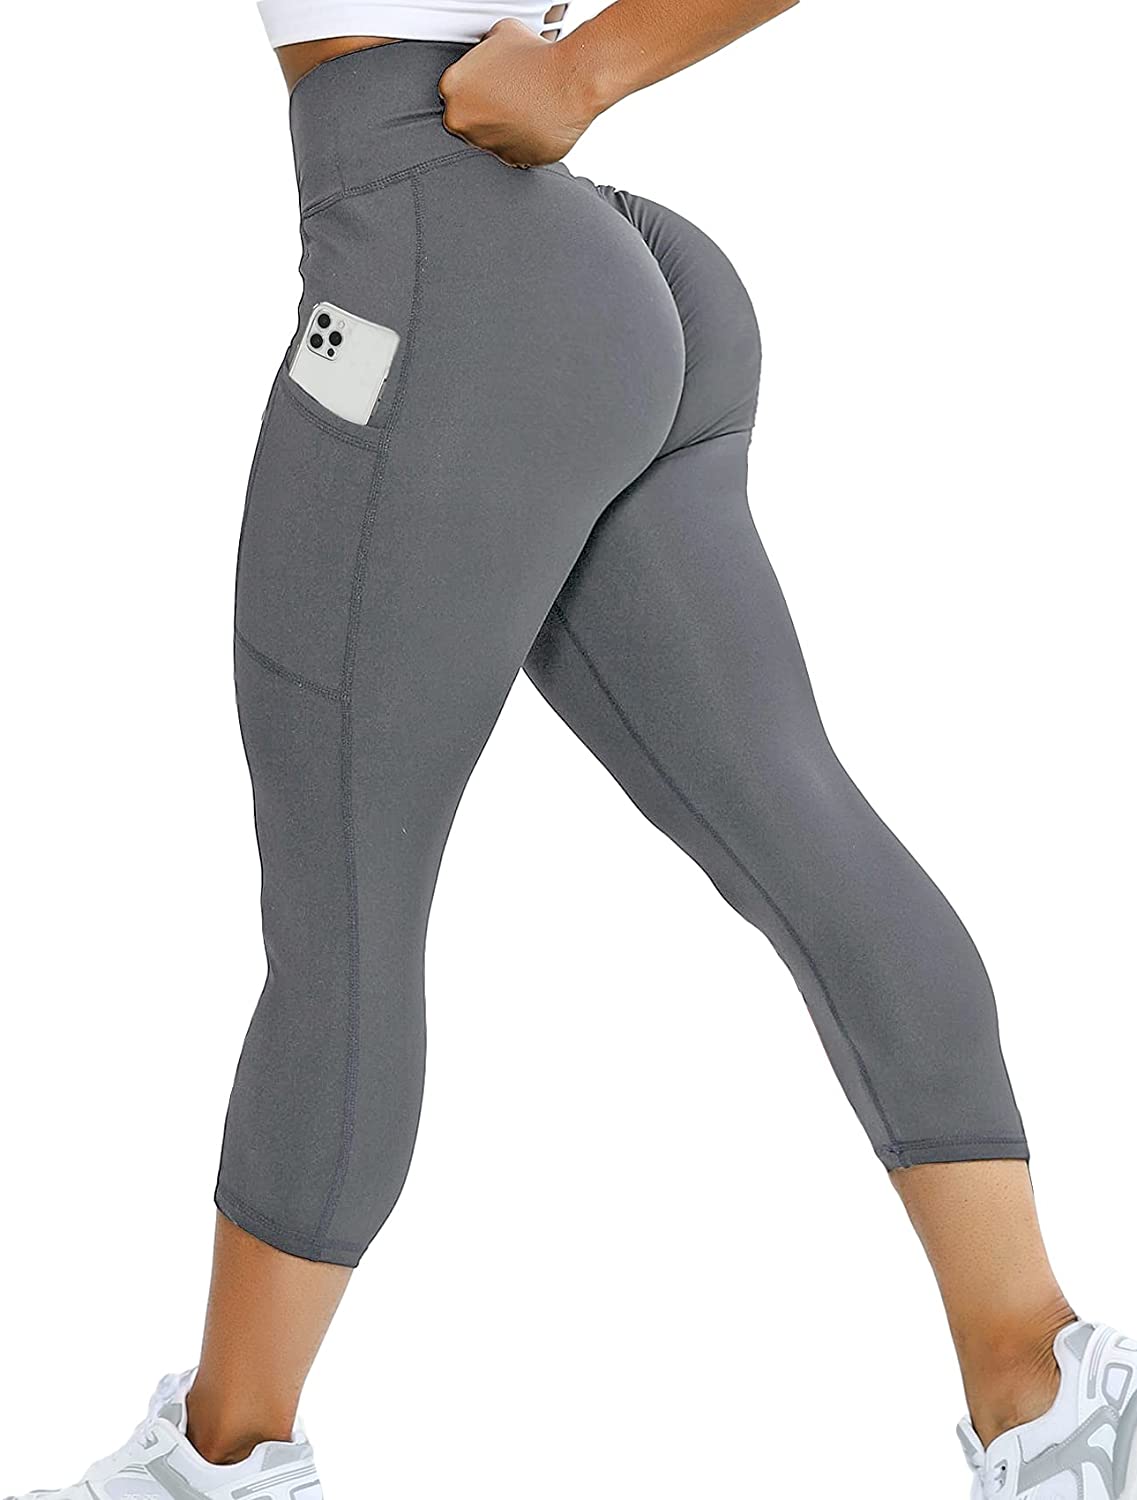 KIWI RATA Women Scrunch Butt Yoga Pants High Waist Sport Workout